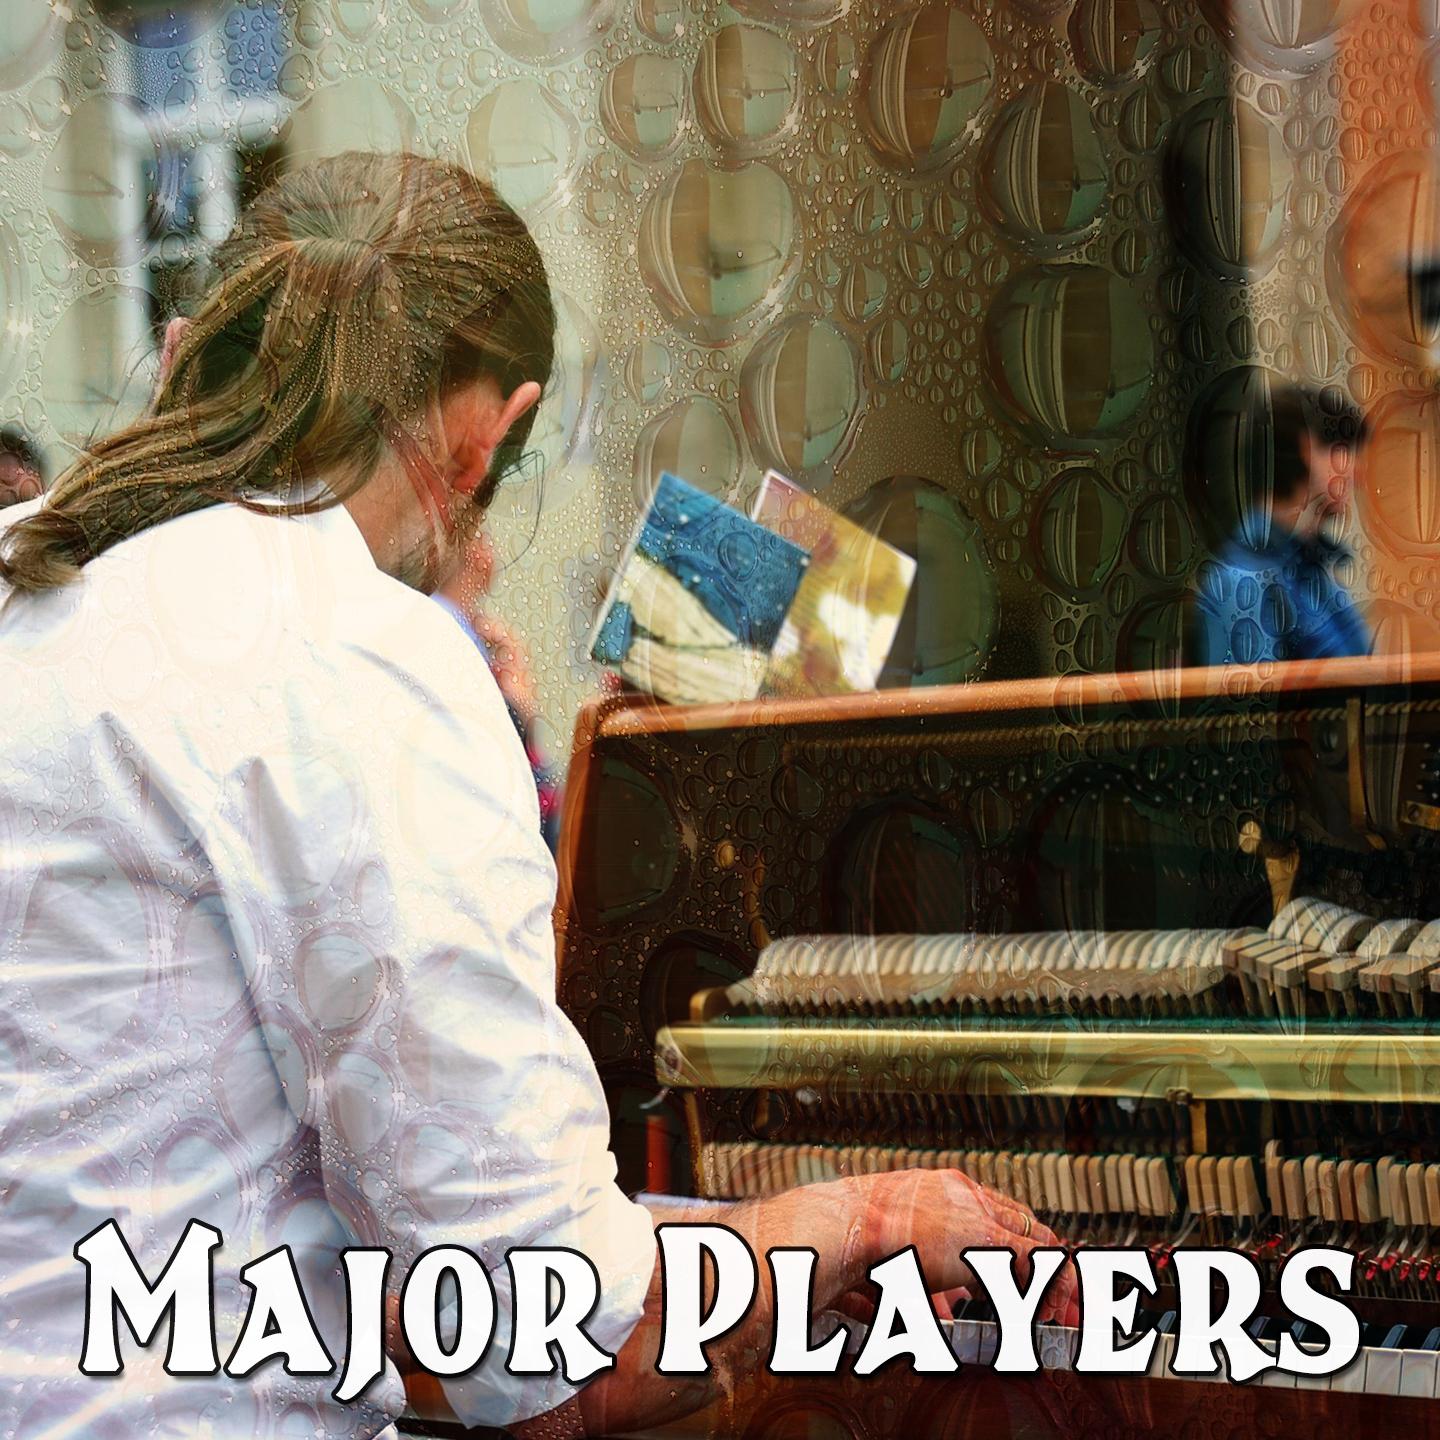 Major Players